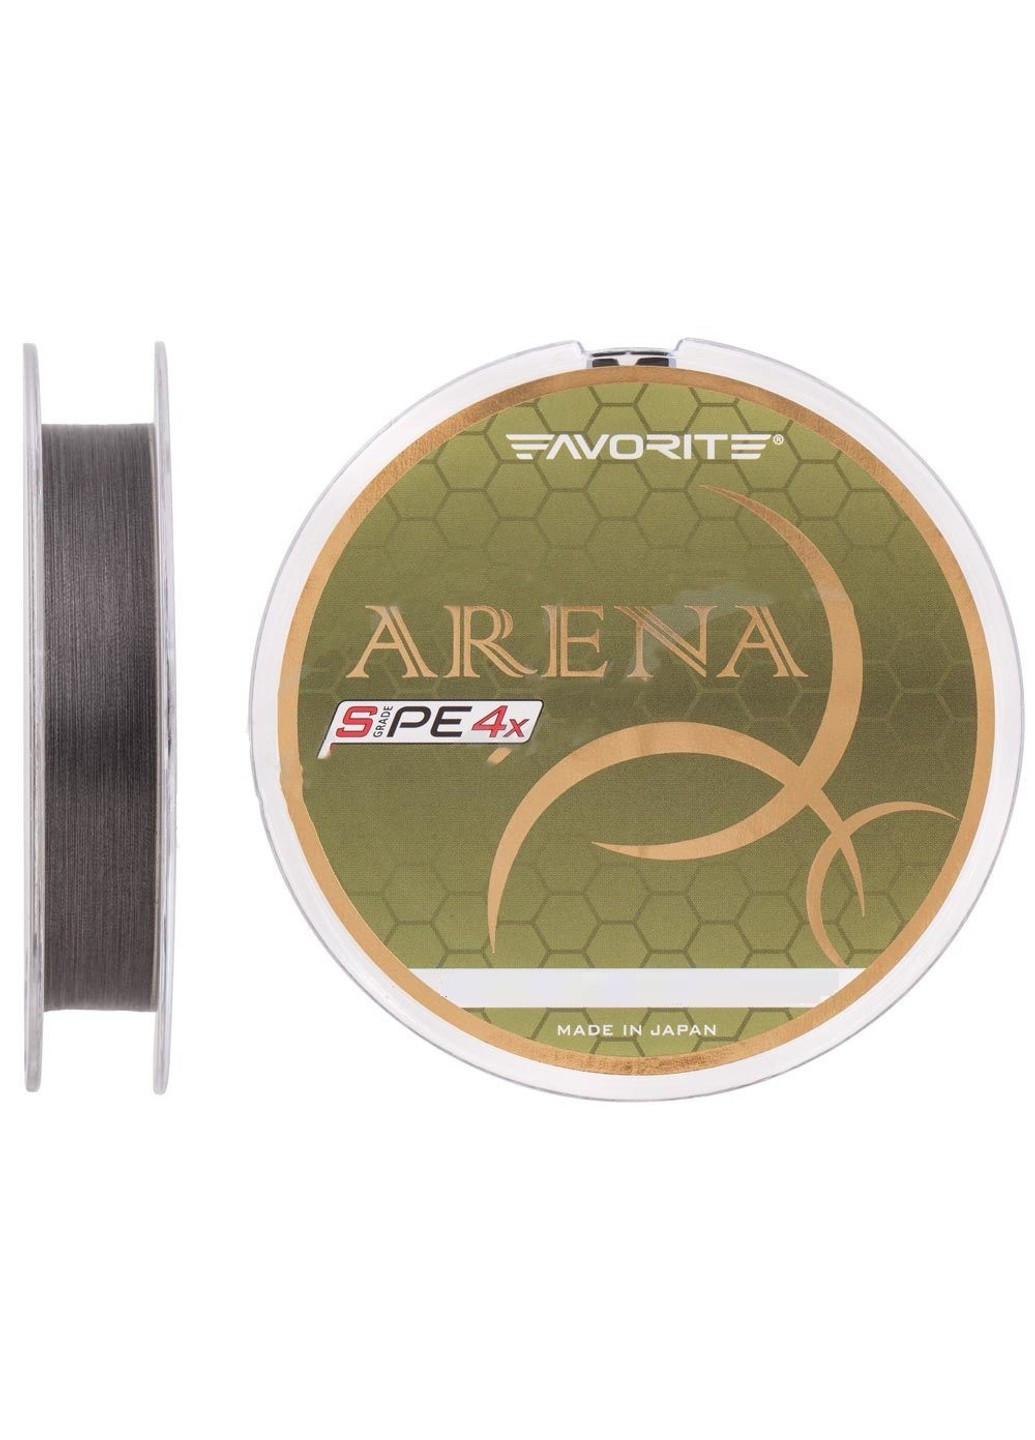 Шнур Arena PE 4x 150м (silver gray) #0.3/0.09mm 7lb/3kg (1693-10-90) Favorite (252468193)